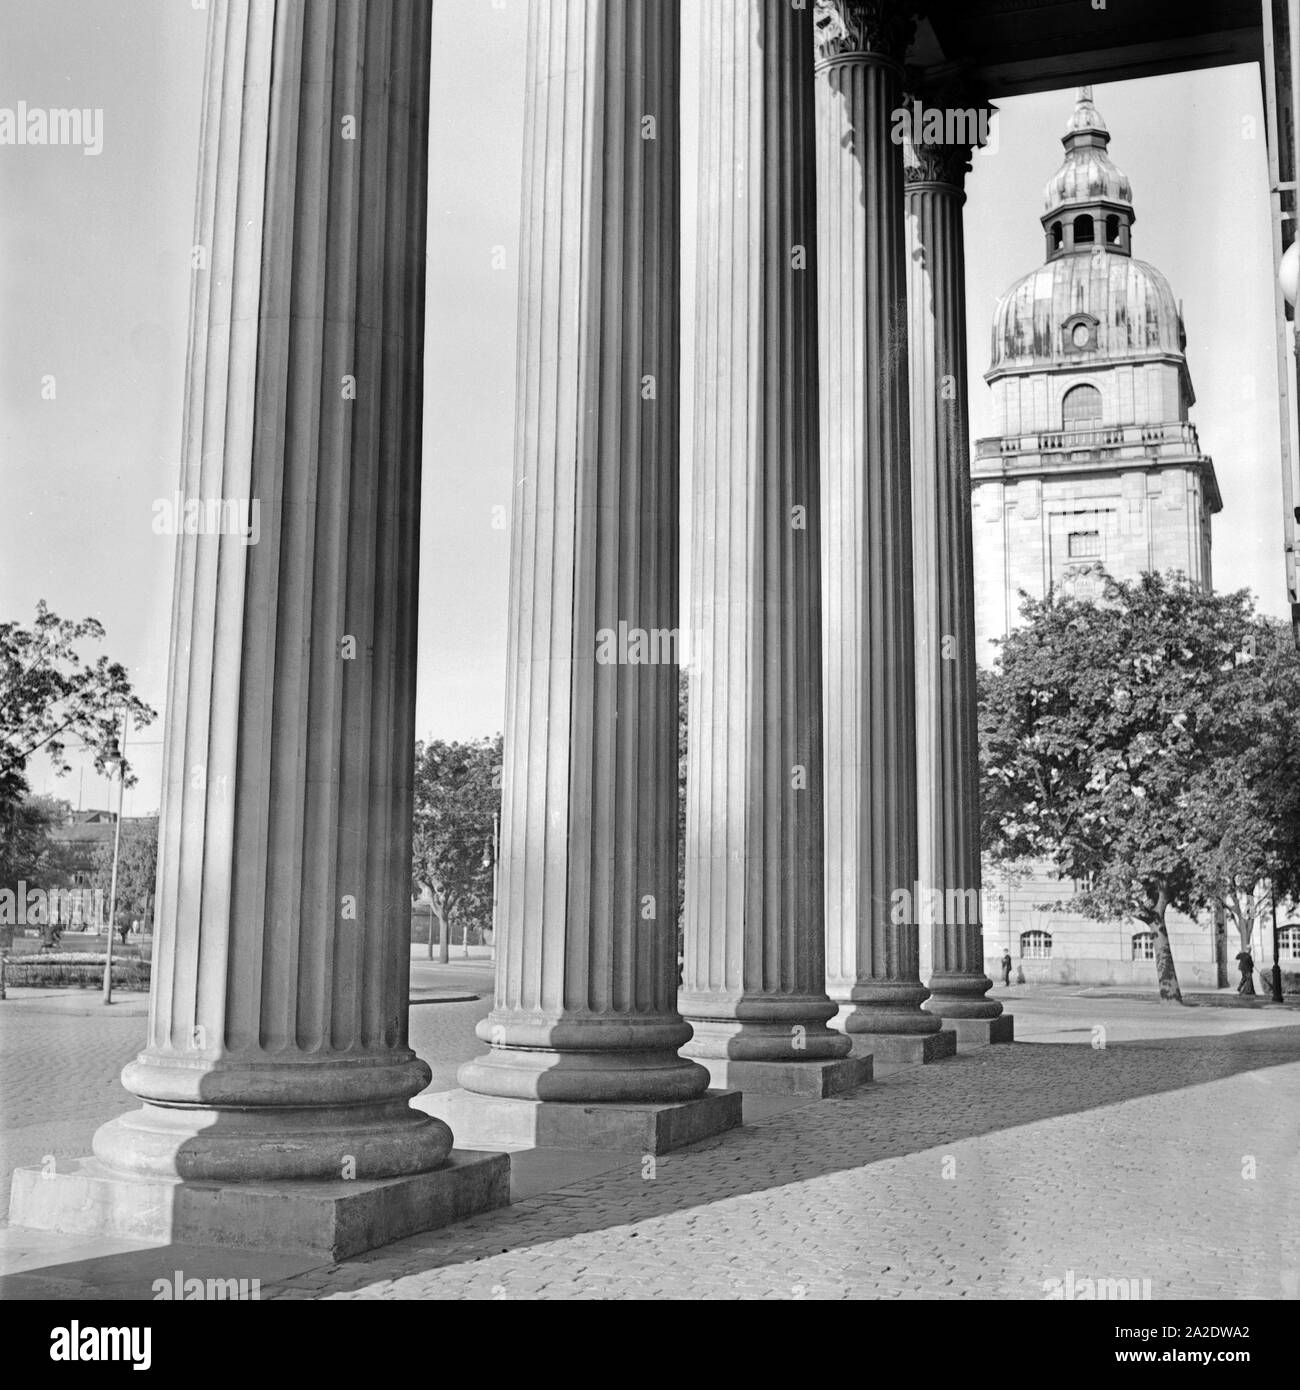 Säulen am Eingangsbereich des Theaters in Darmstadt, Deutschland 1930er Jahre. Columns at the entrance of the Darmstadt theatre, Germany 1930s. Stock Photo